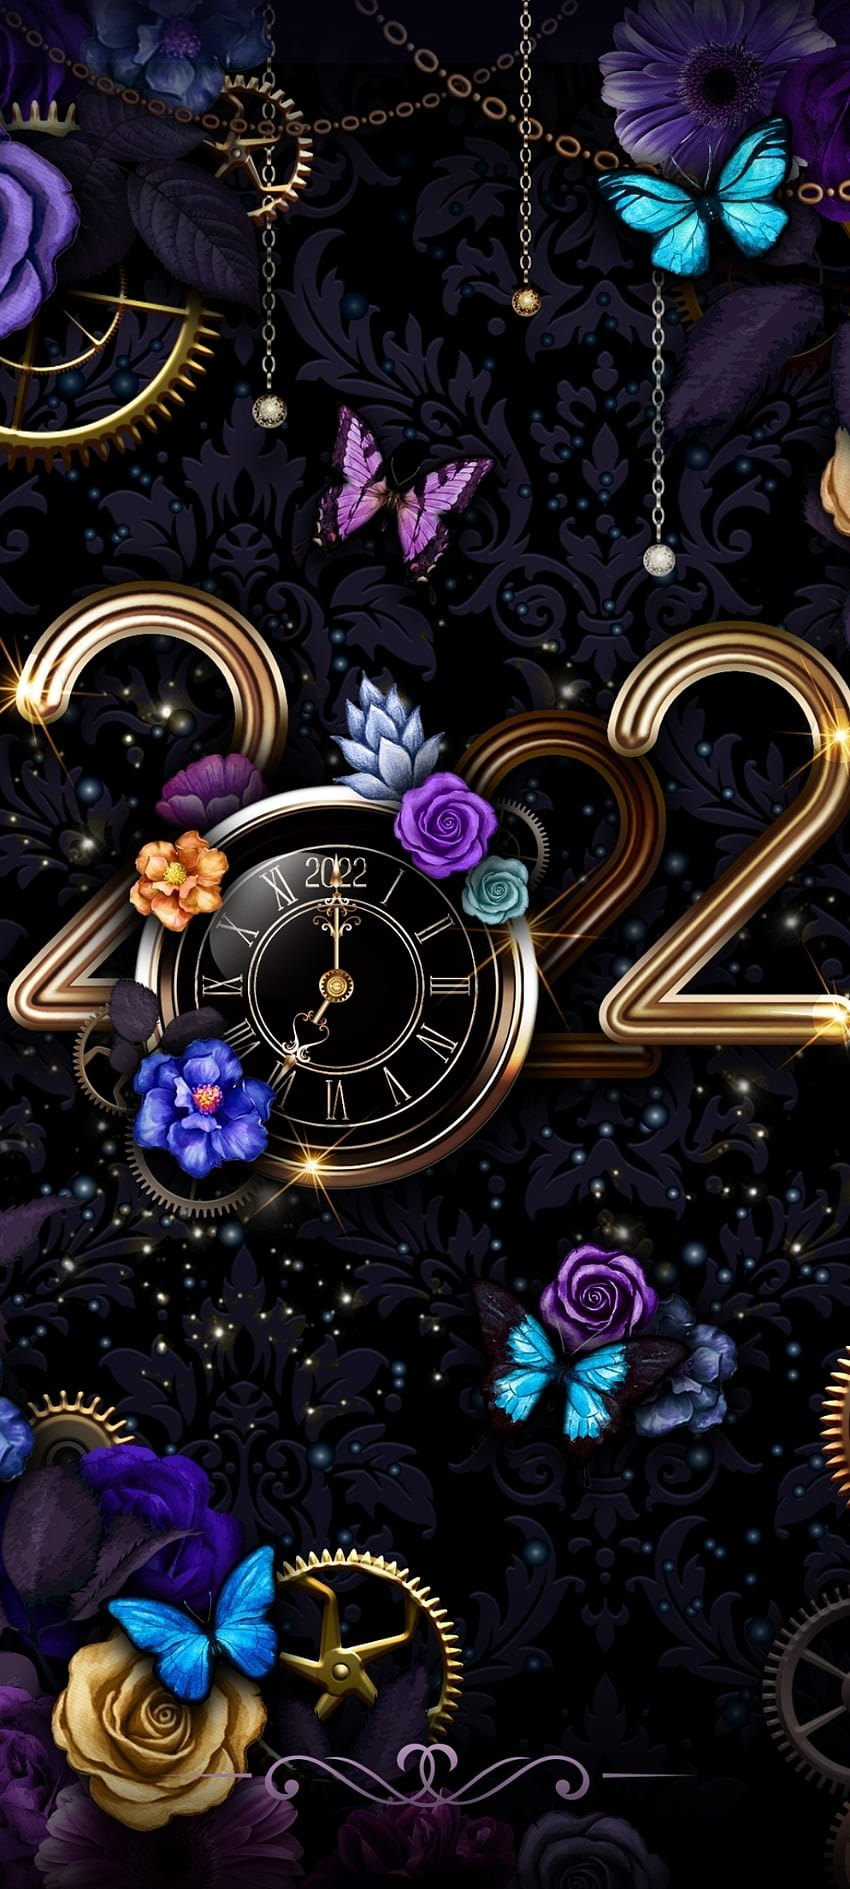 Schmetterling und Rose, elektrisches Blau, Kunst, Weihnachten, Festival, dunkel, 2022, Neujahr, Uhr, Blume HD-Handy-Hintergrundbild